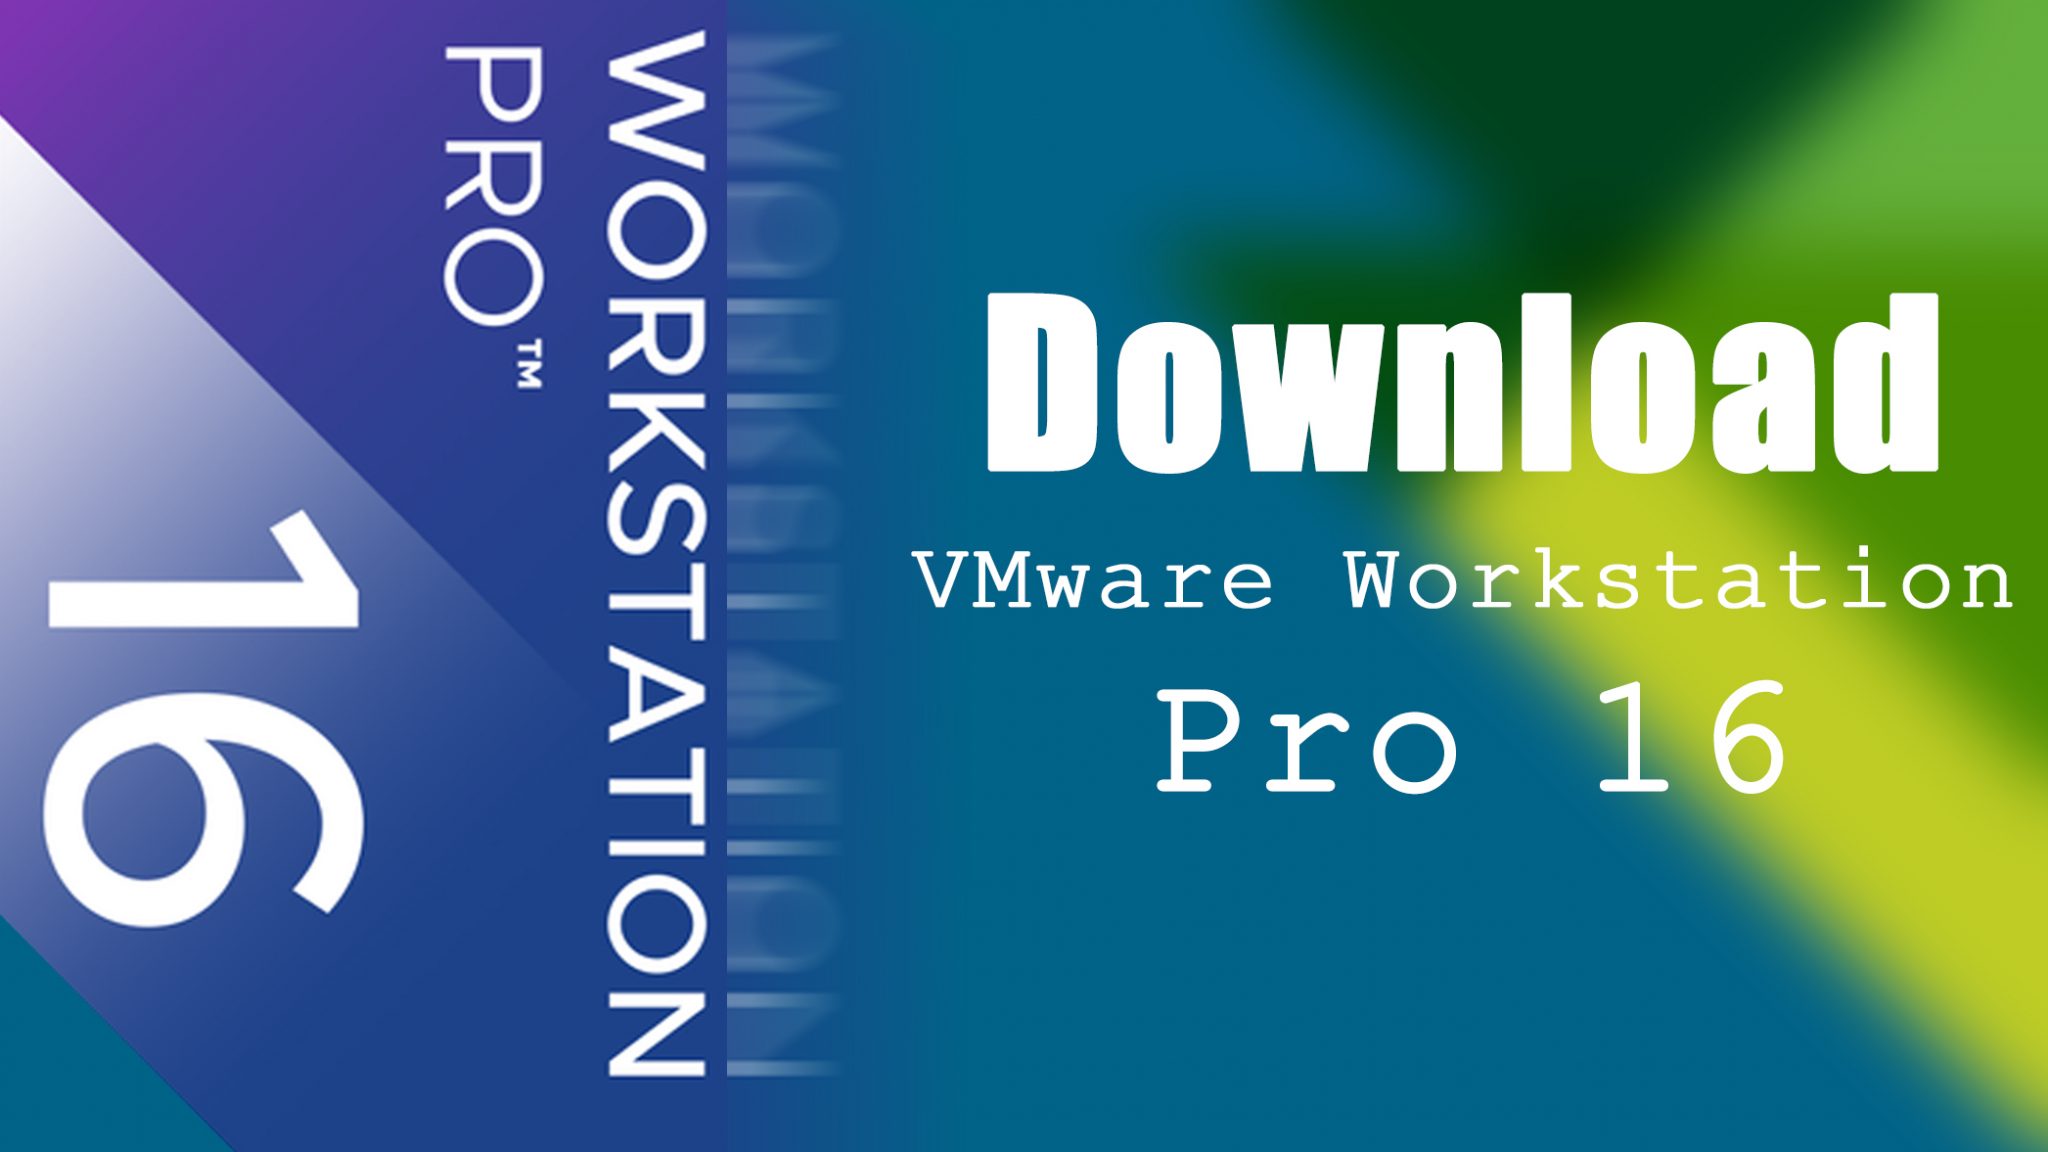 download vmware workstation 16 pro free